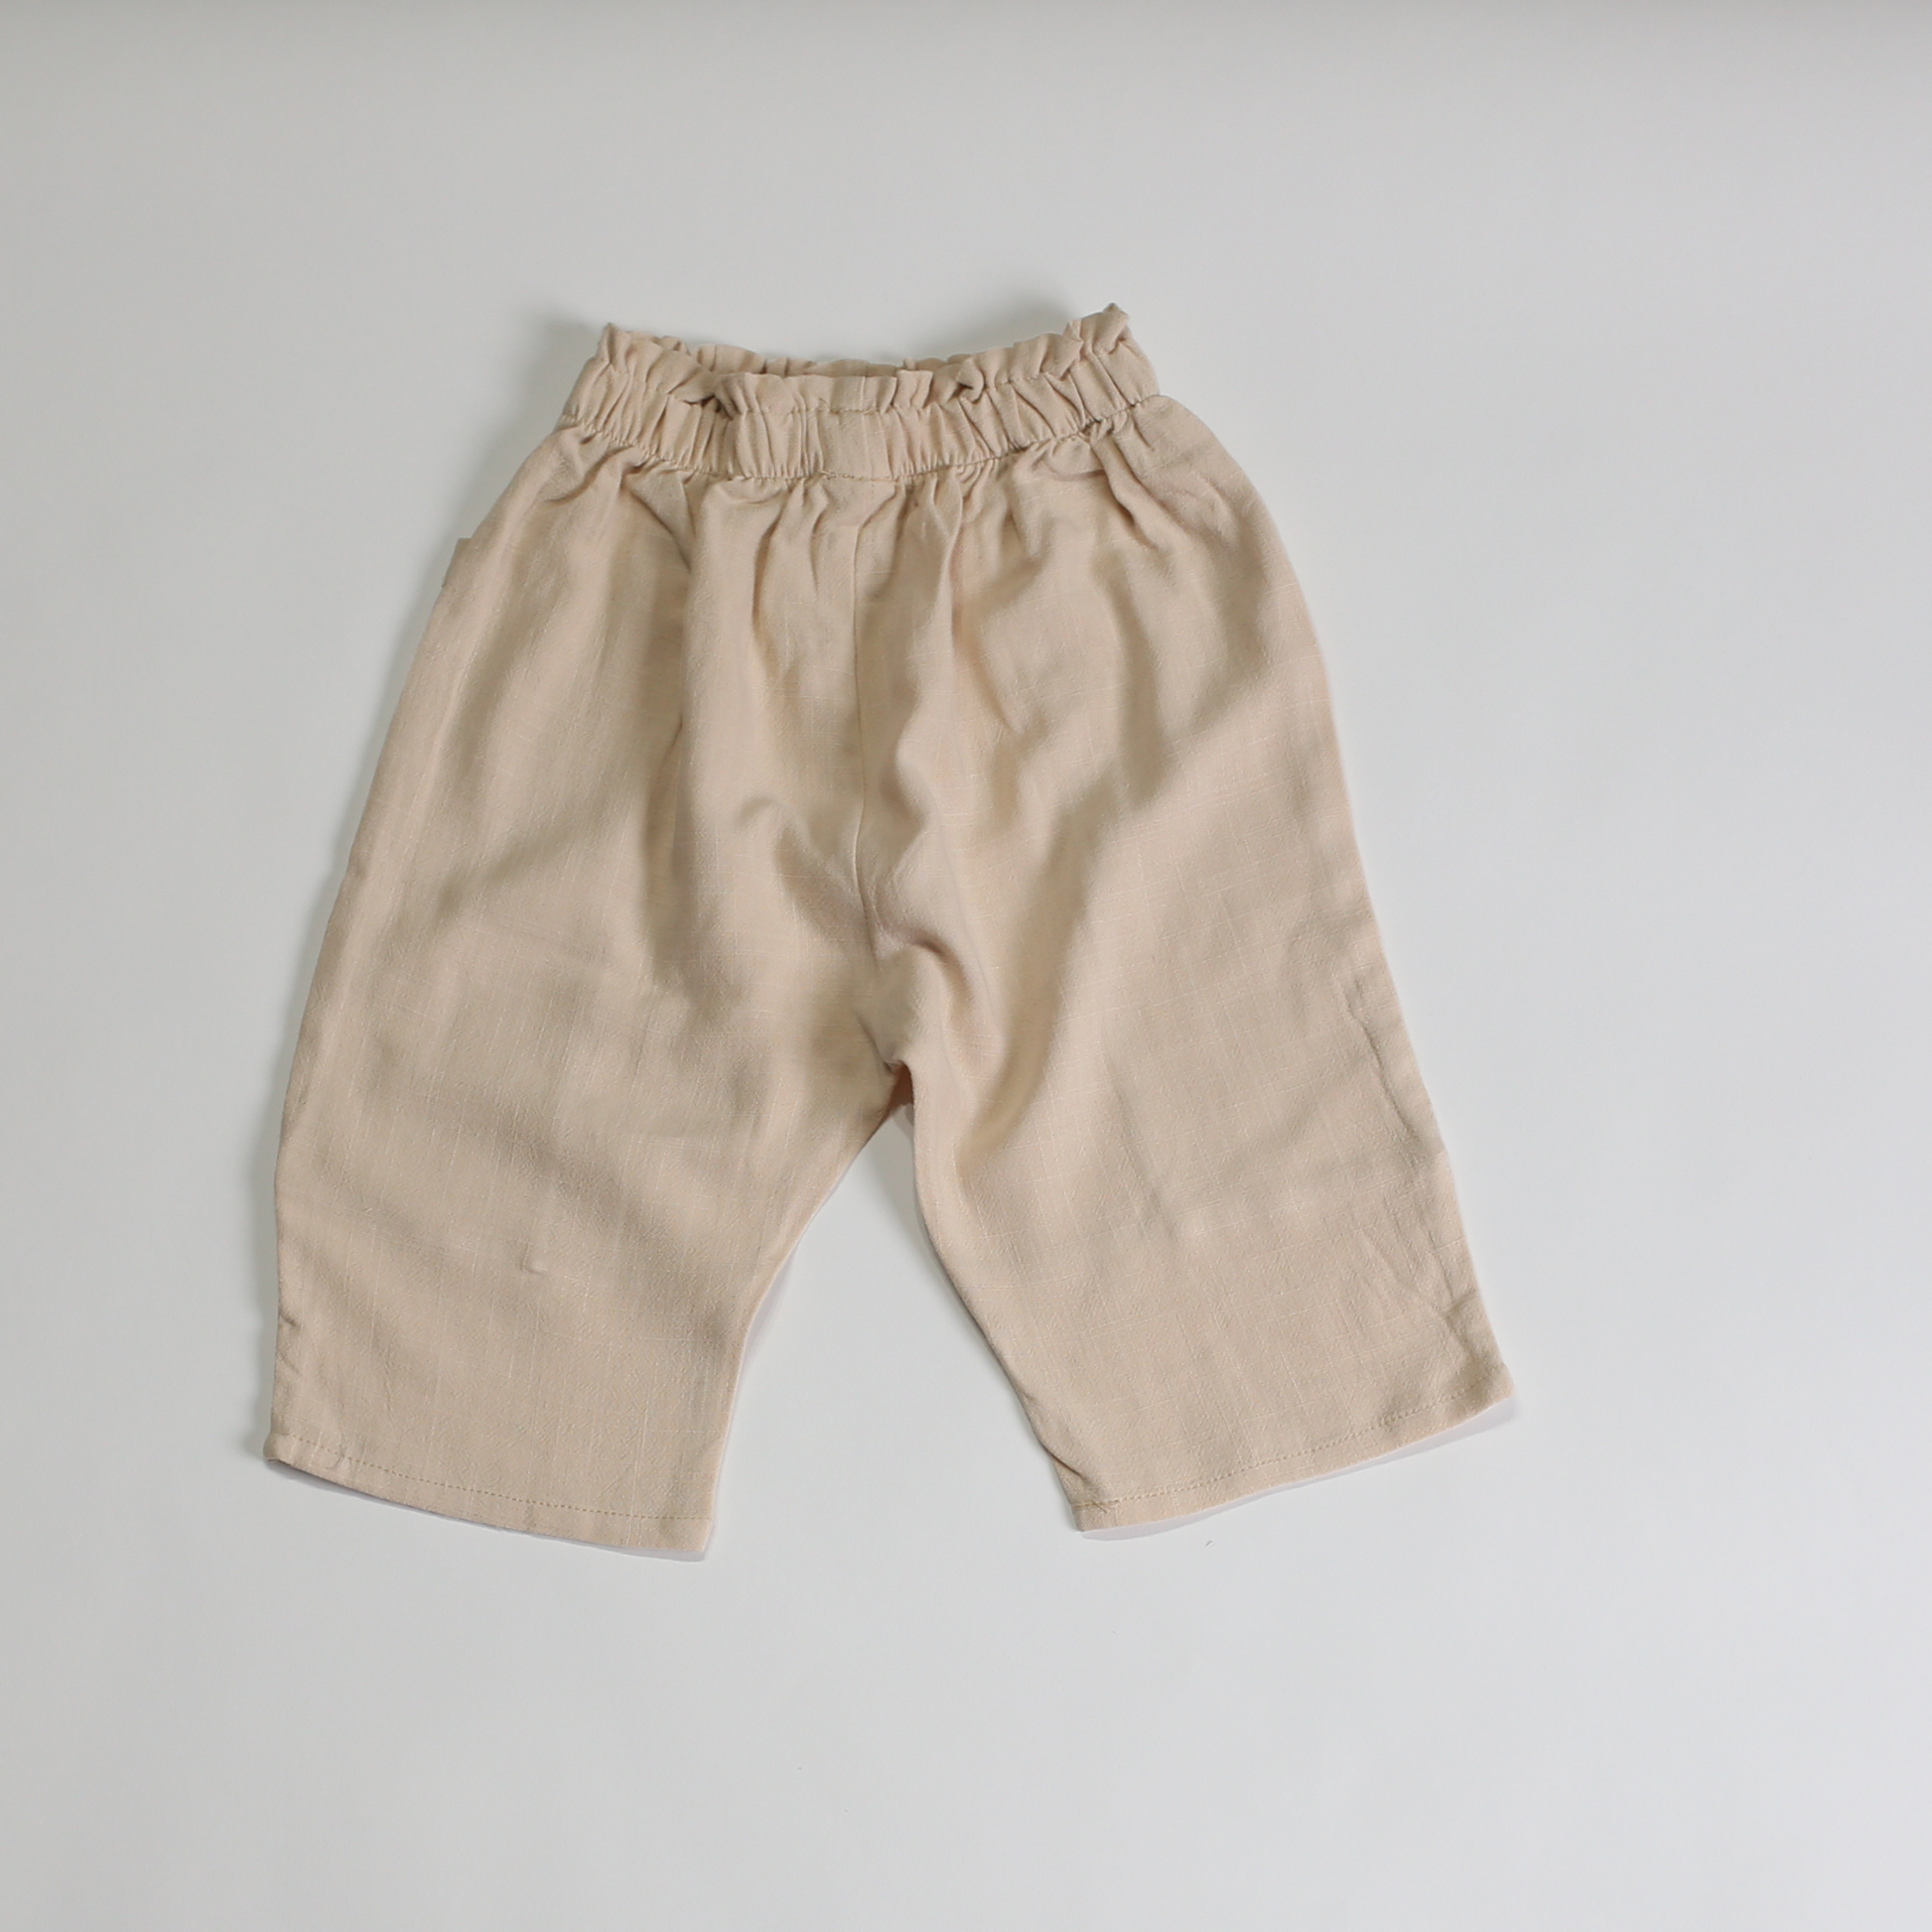 サマー コットン パンツ / summer cotton pants (こども服) - kids clothes shop GUZUGUZU